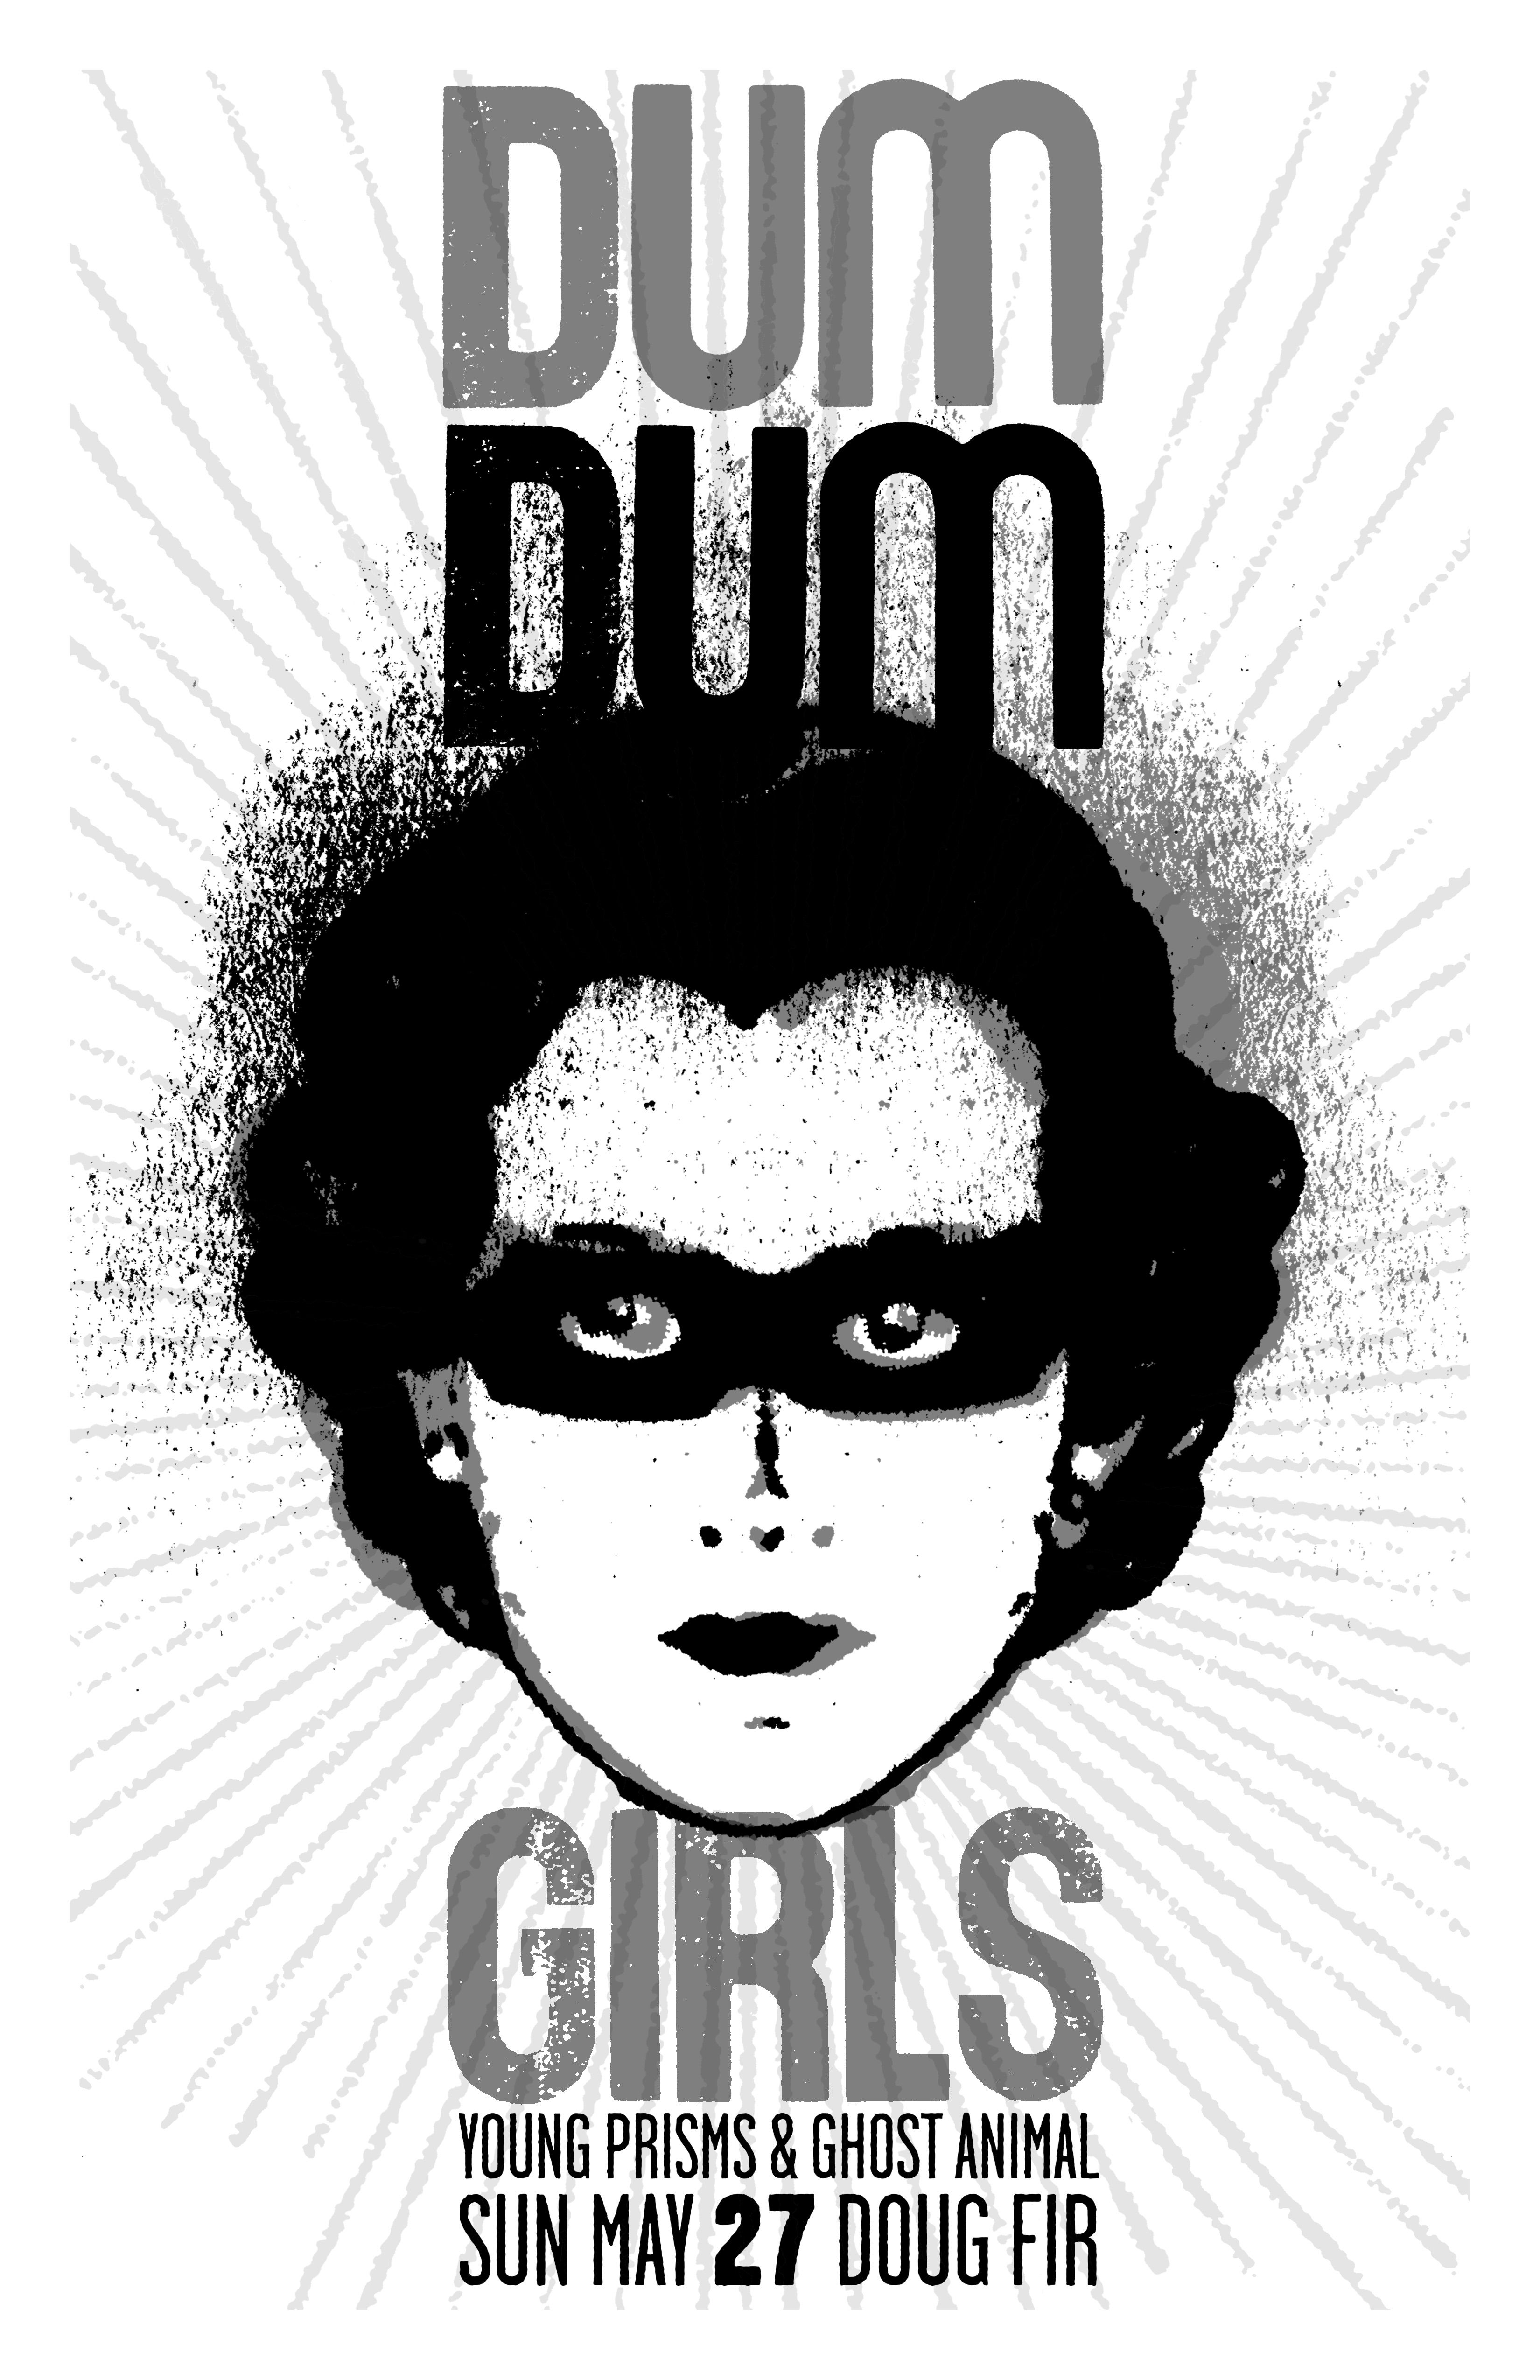 MXP-141.20 Dum Dum Girls 2012 Doug Fir  May 27 Concert Poster